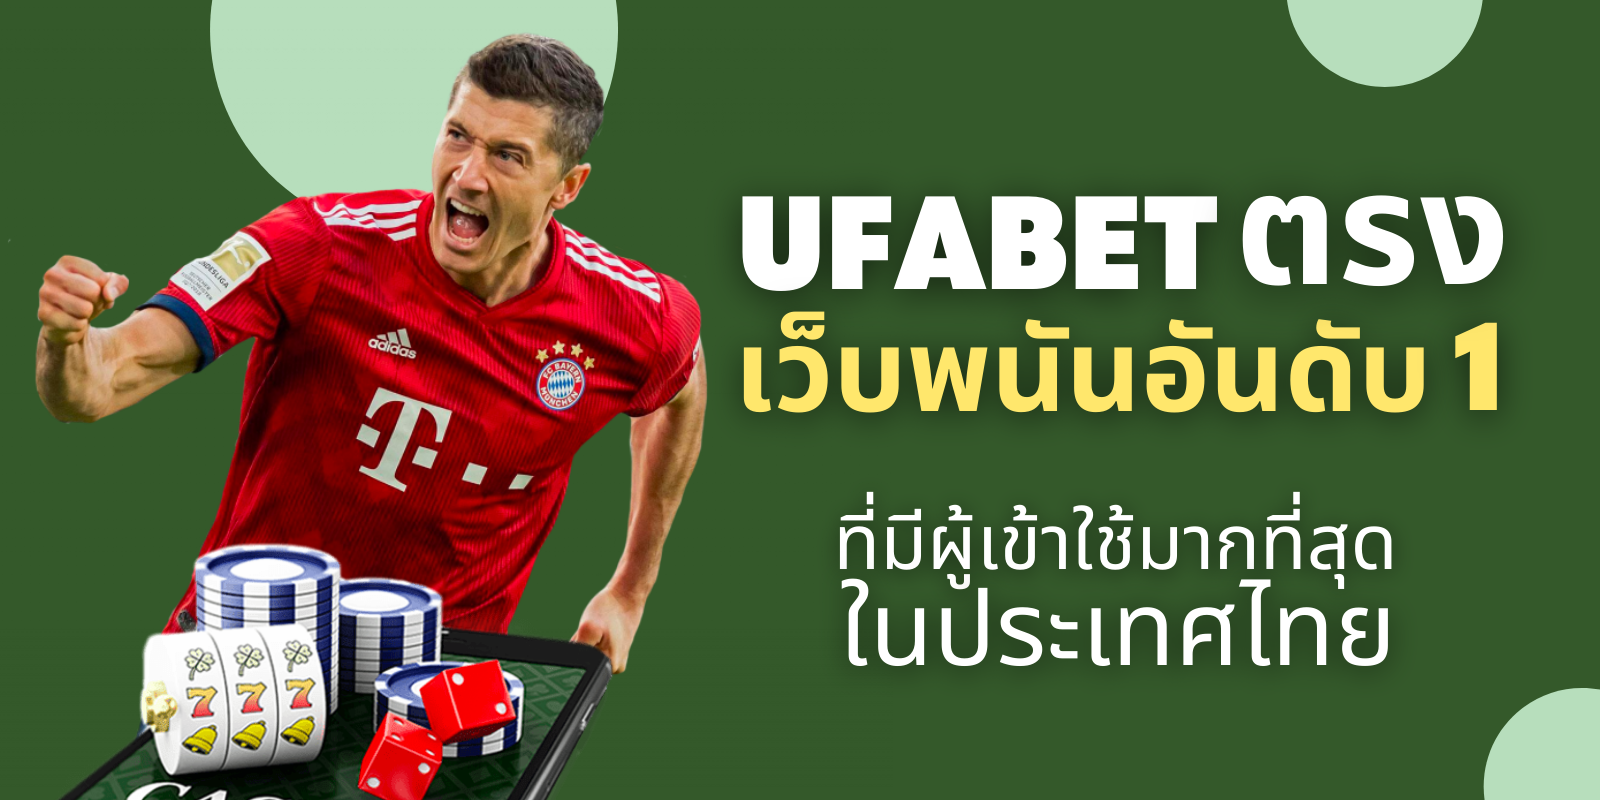 ufabet ตรง เว็บพนันอันดับ 1  ที่มีผู้เข้าใช้มากที่สุดในประเทศไทย